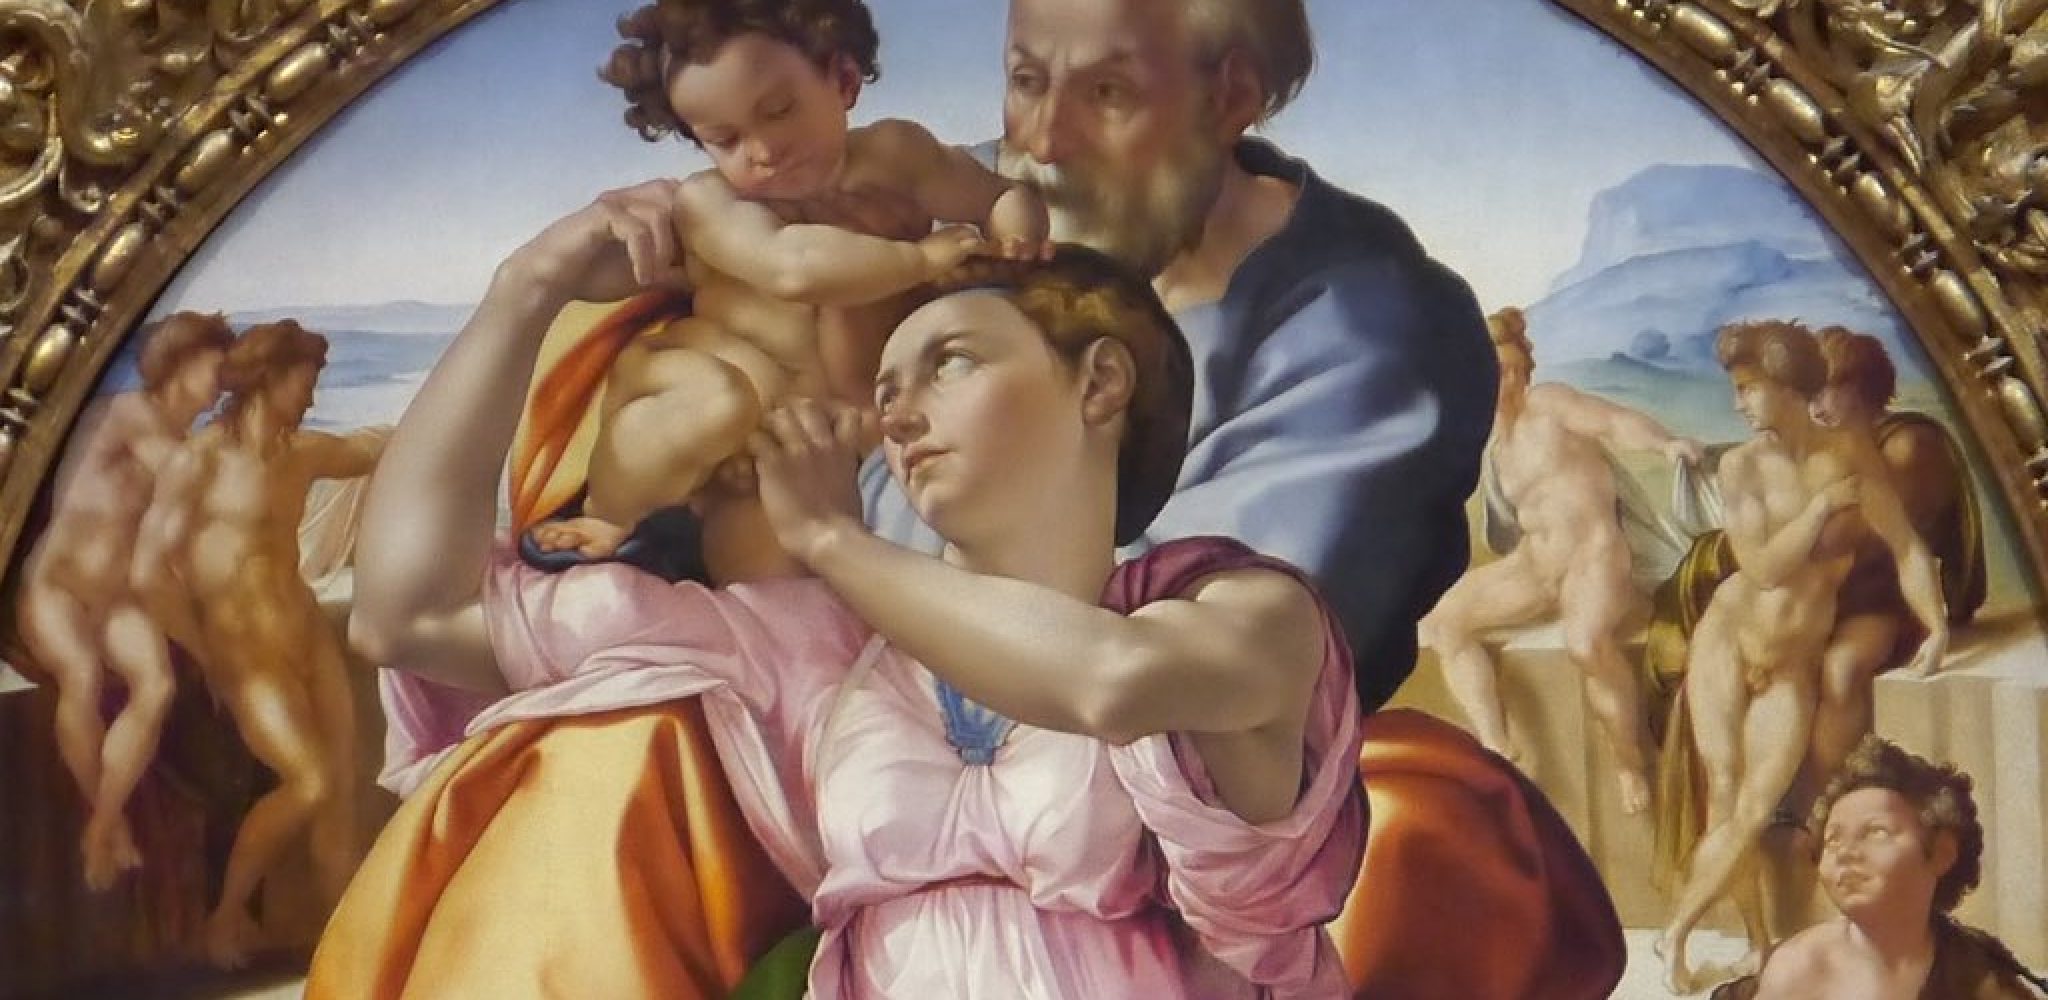 Gemälde von Michelangelo in den Uffizien.